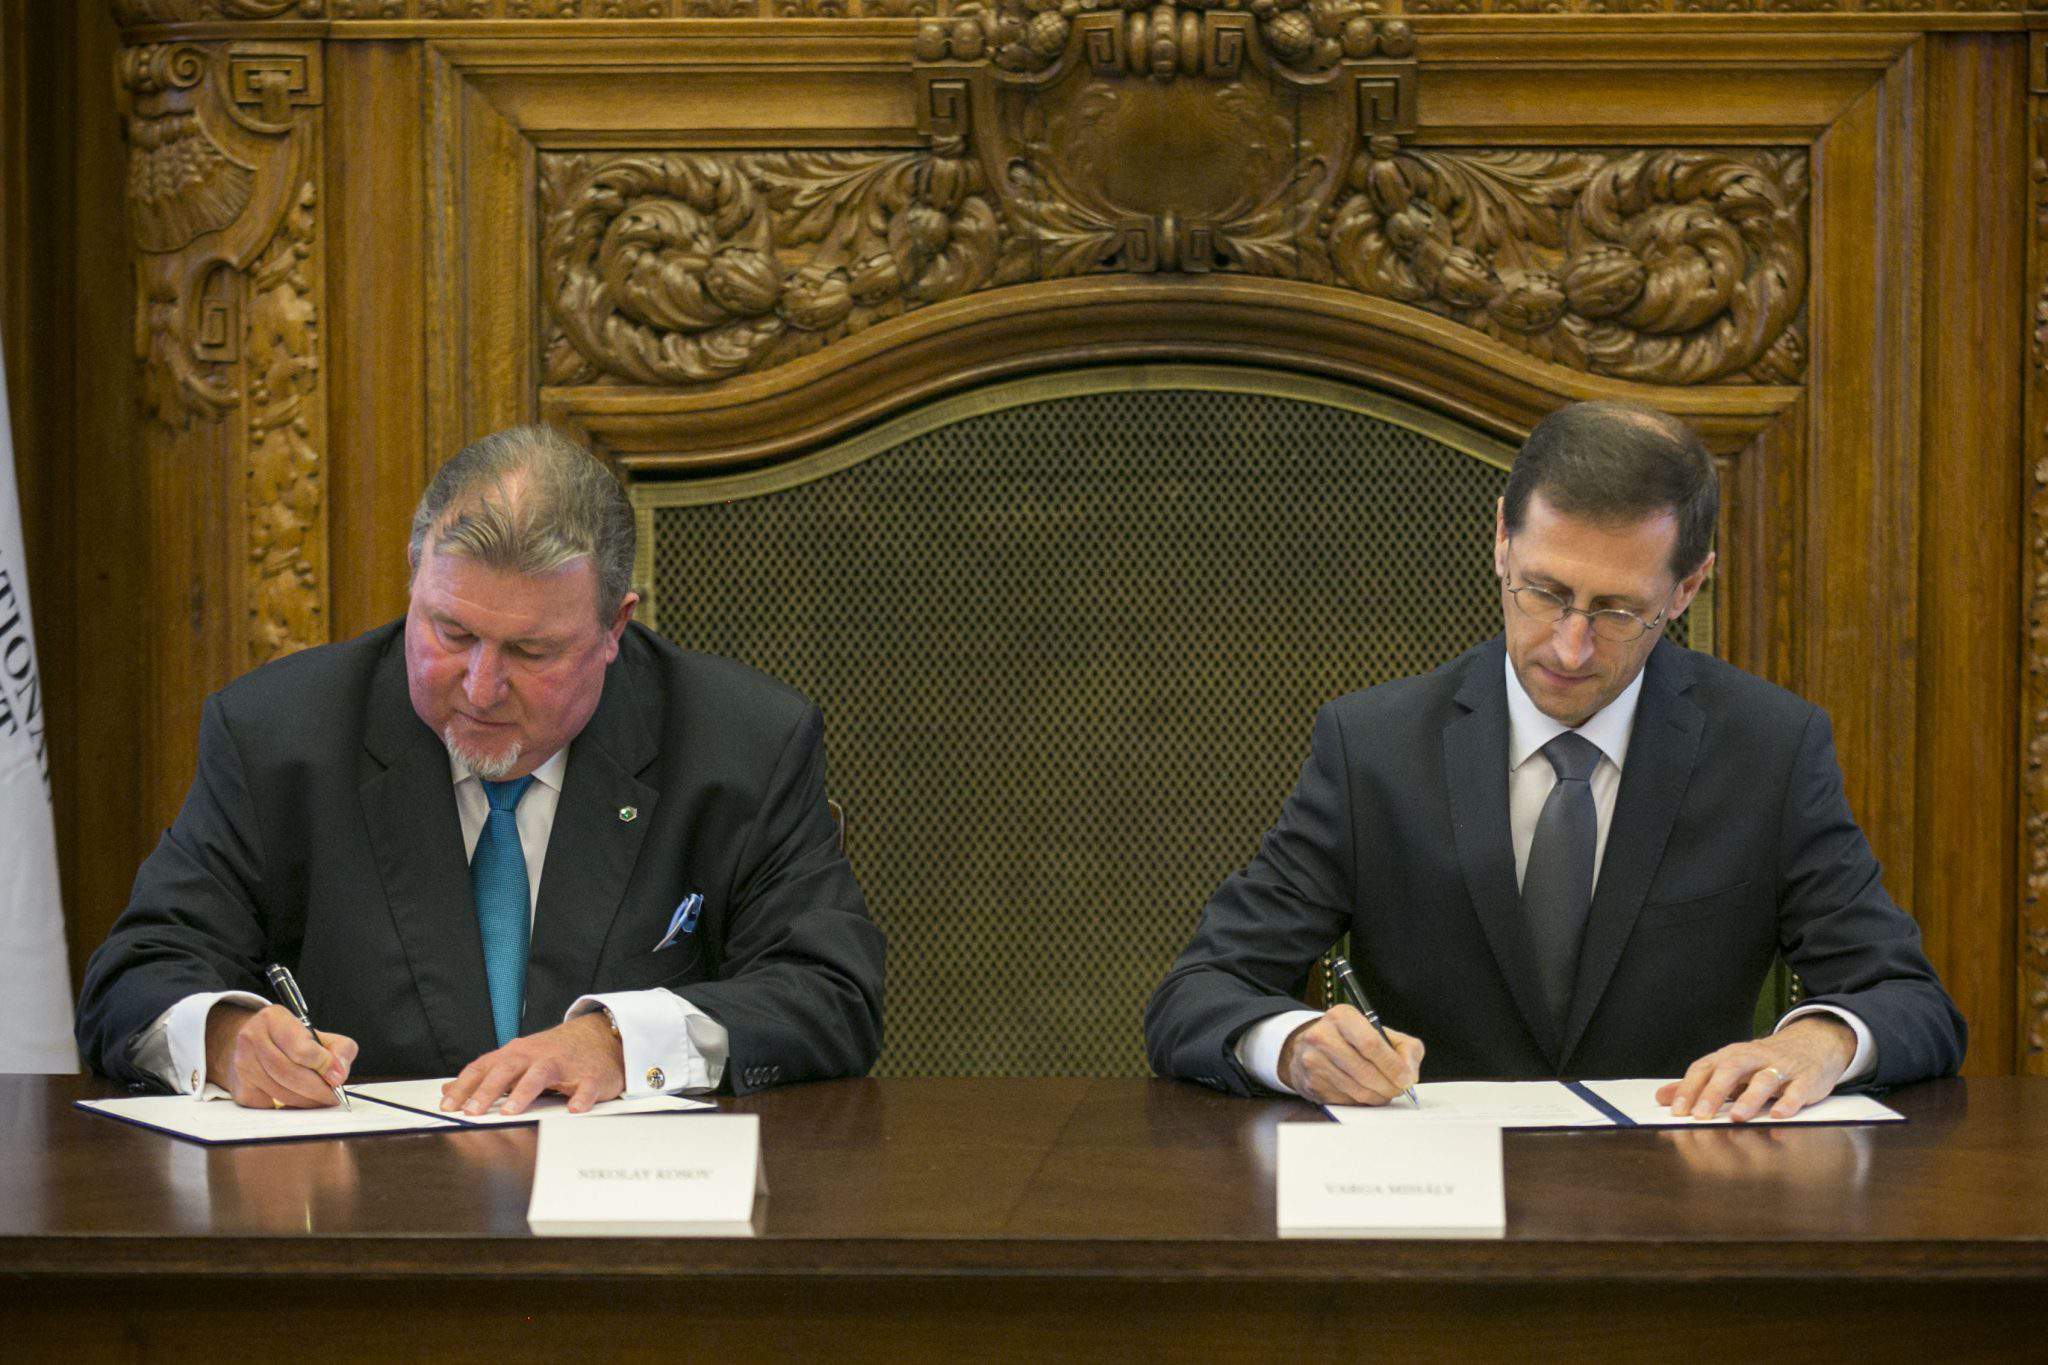 投資銀行 IIB と Varga は、地方事務所をハンガリーに移すことで最初に合意した